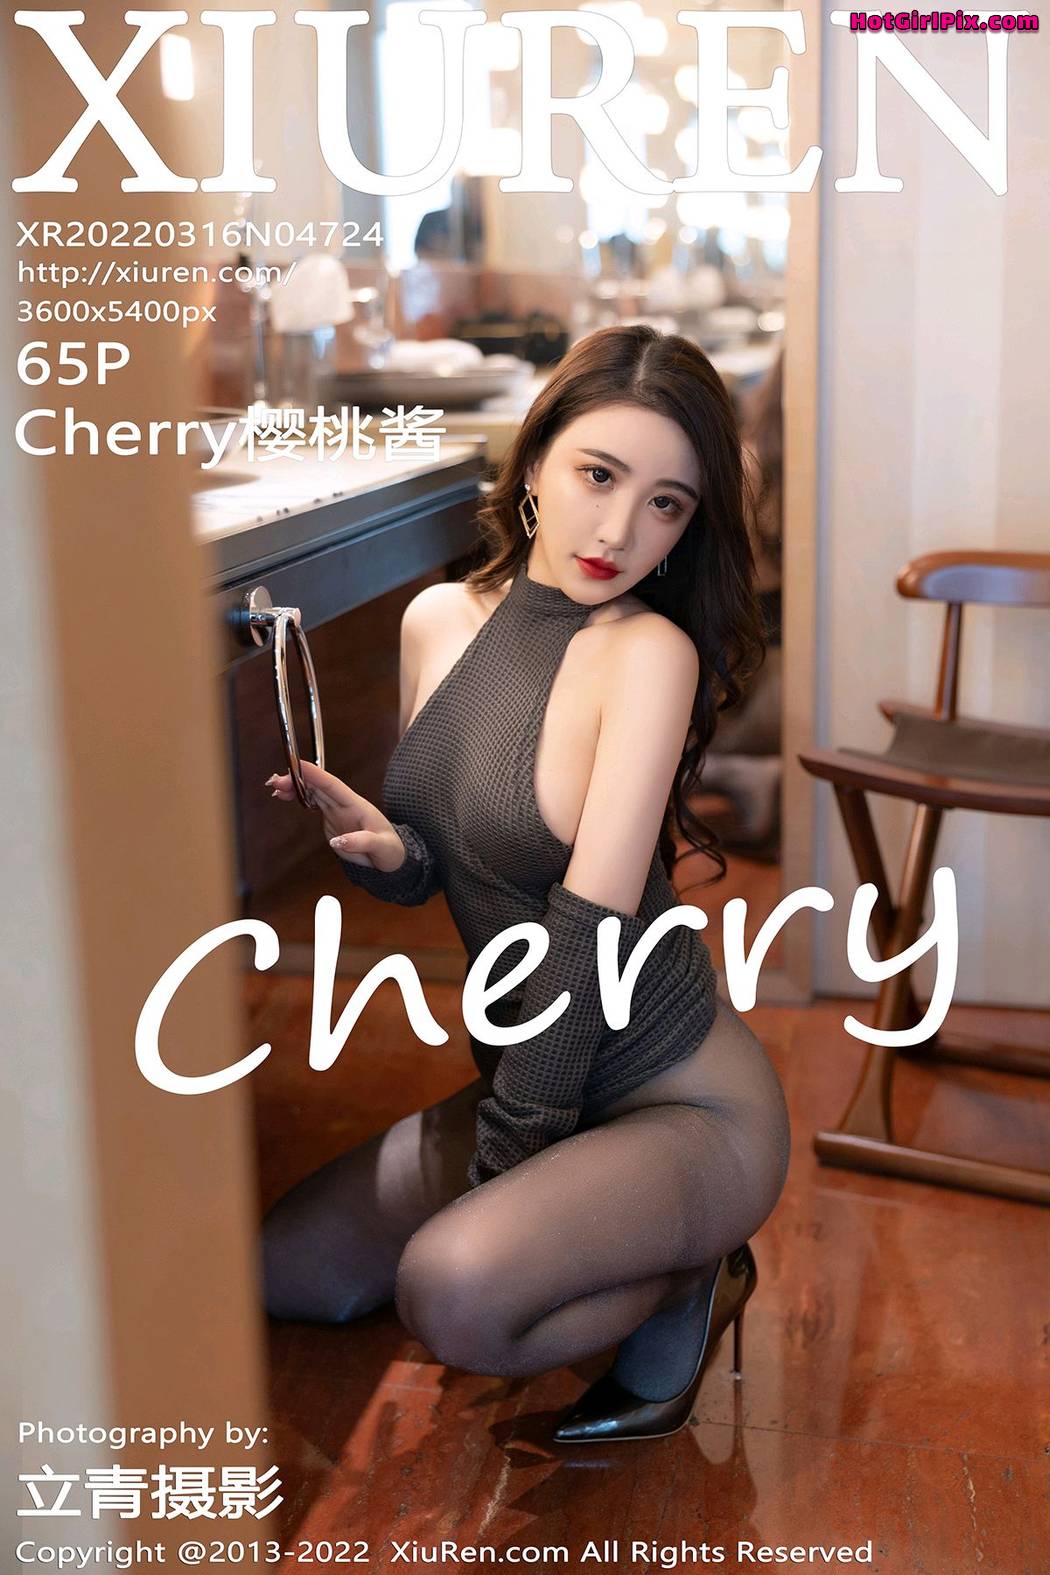 [XIUREN] No.4724 Cherry樱桃酱 Cover Photo